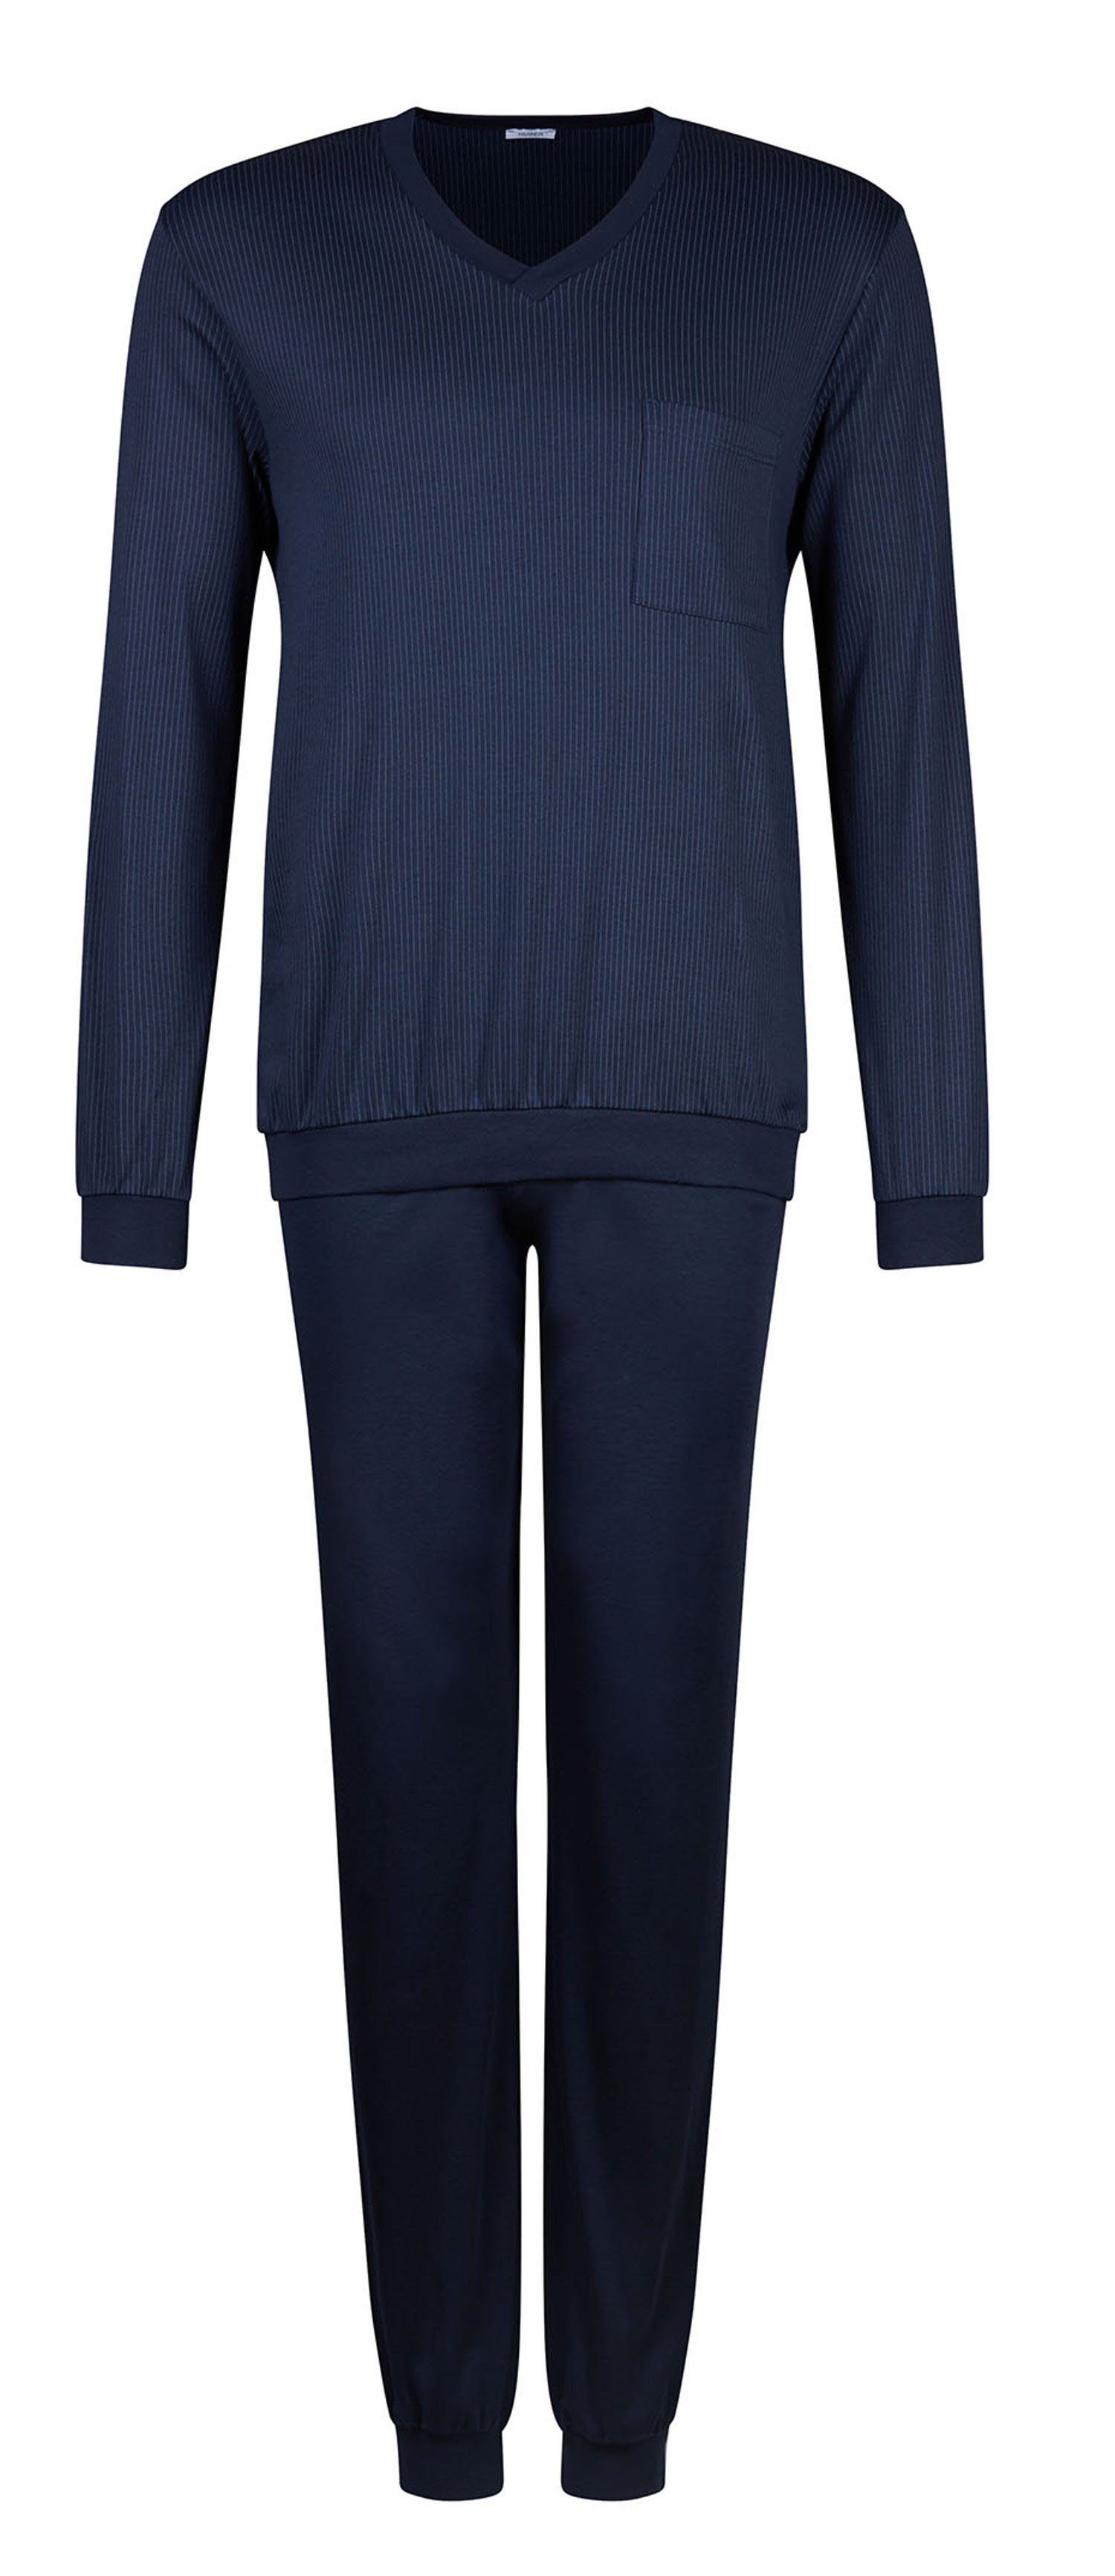 HUBER Pyjama Interlock-Qualität, Material: 100% Baumwolle online kaufen |  OTTO